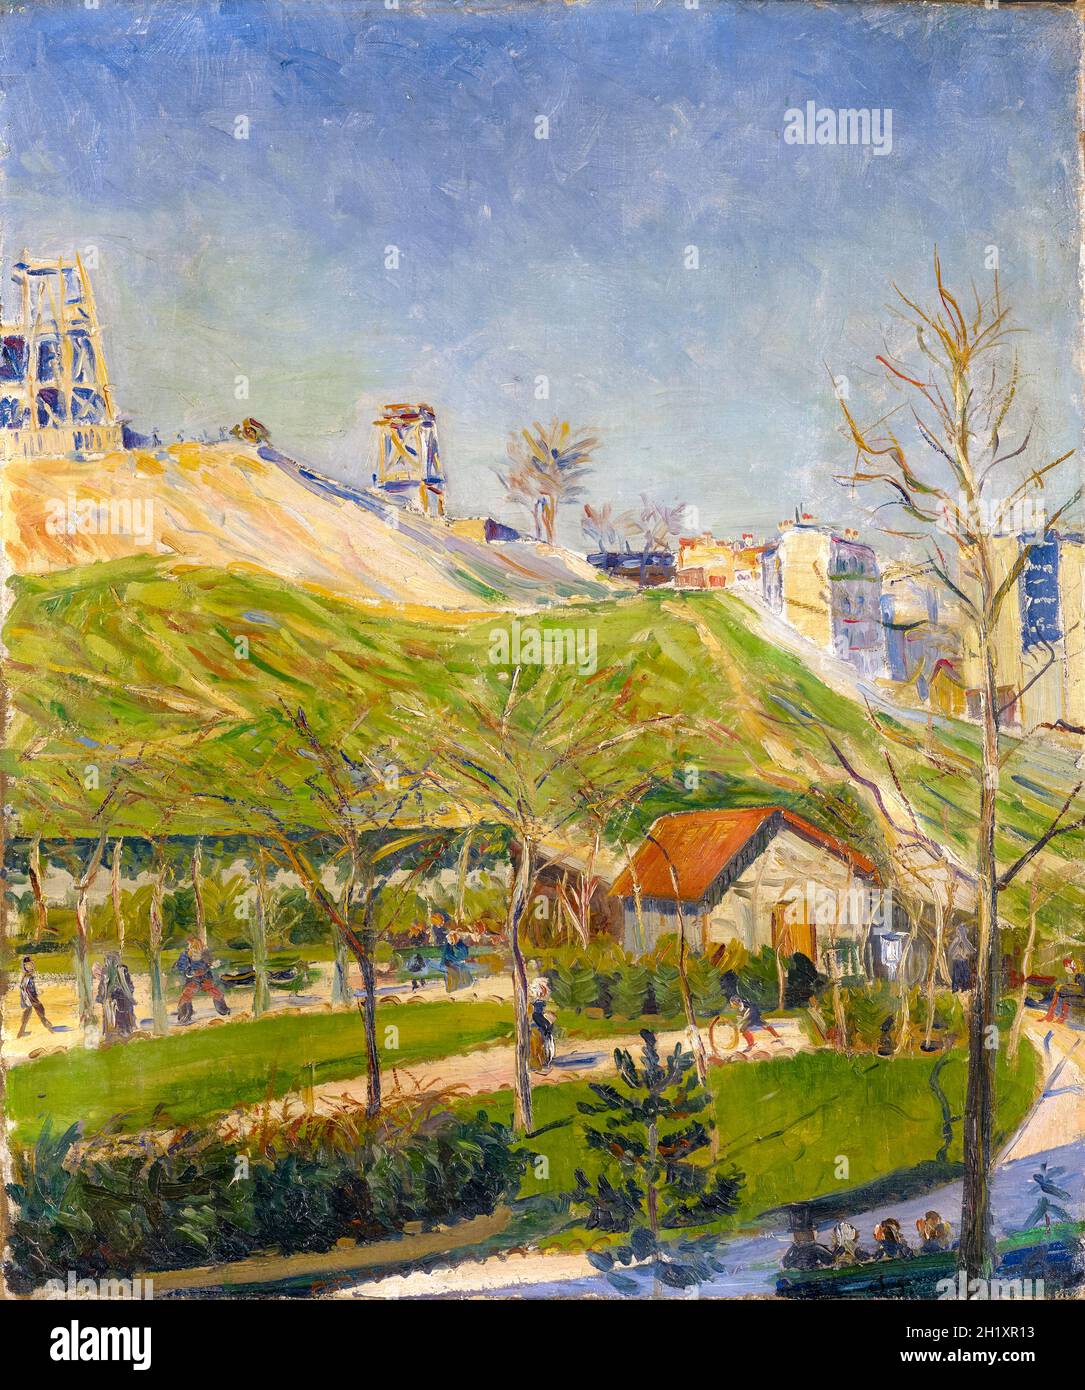 Paul Signac, place Saint-Pierre, peinture de paysage, 1883-1884 Banque D'Images